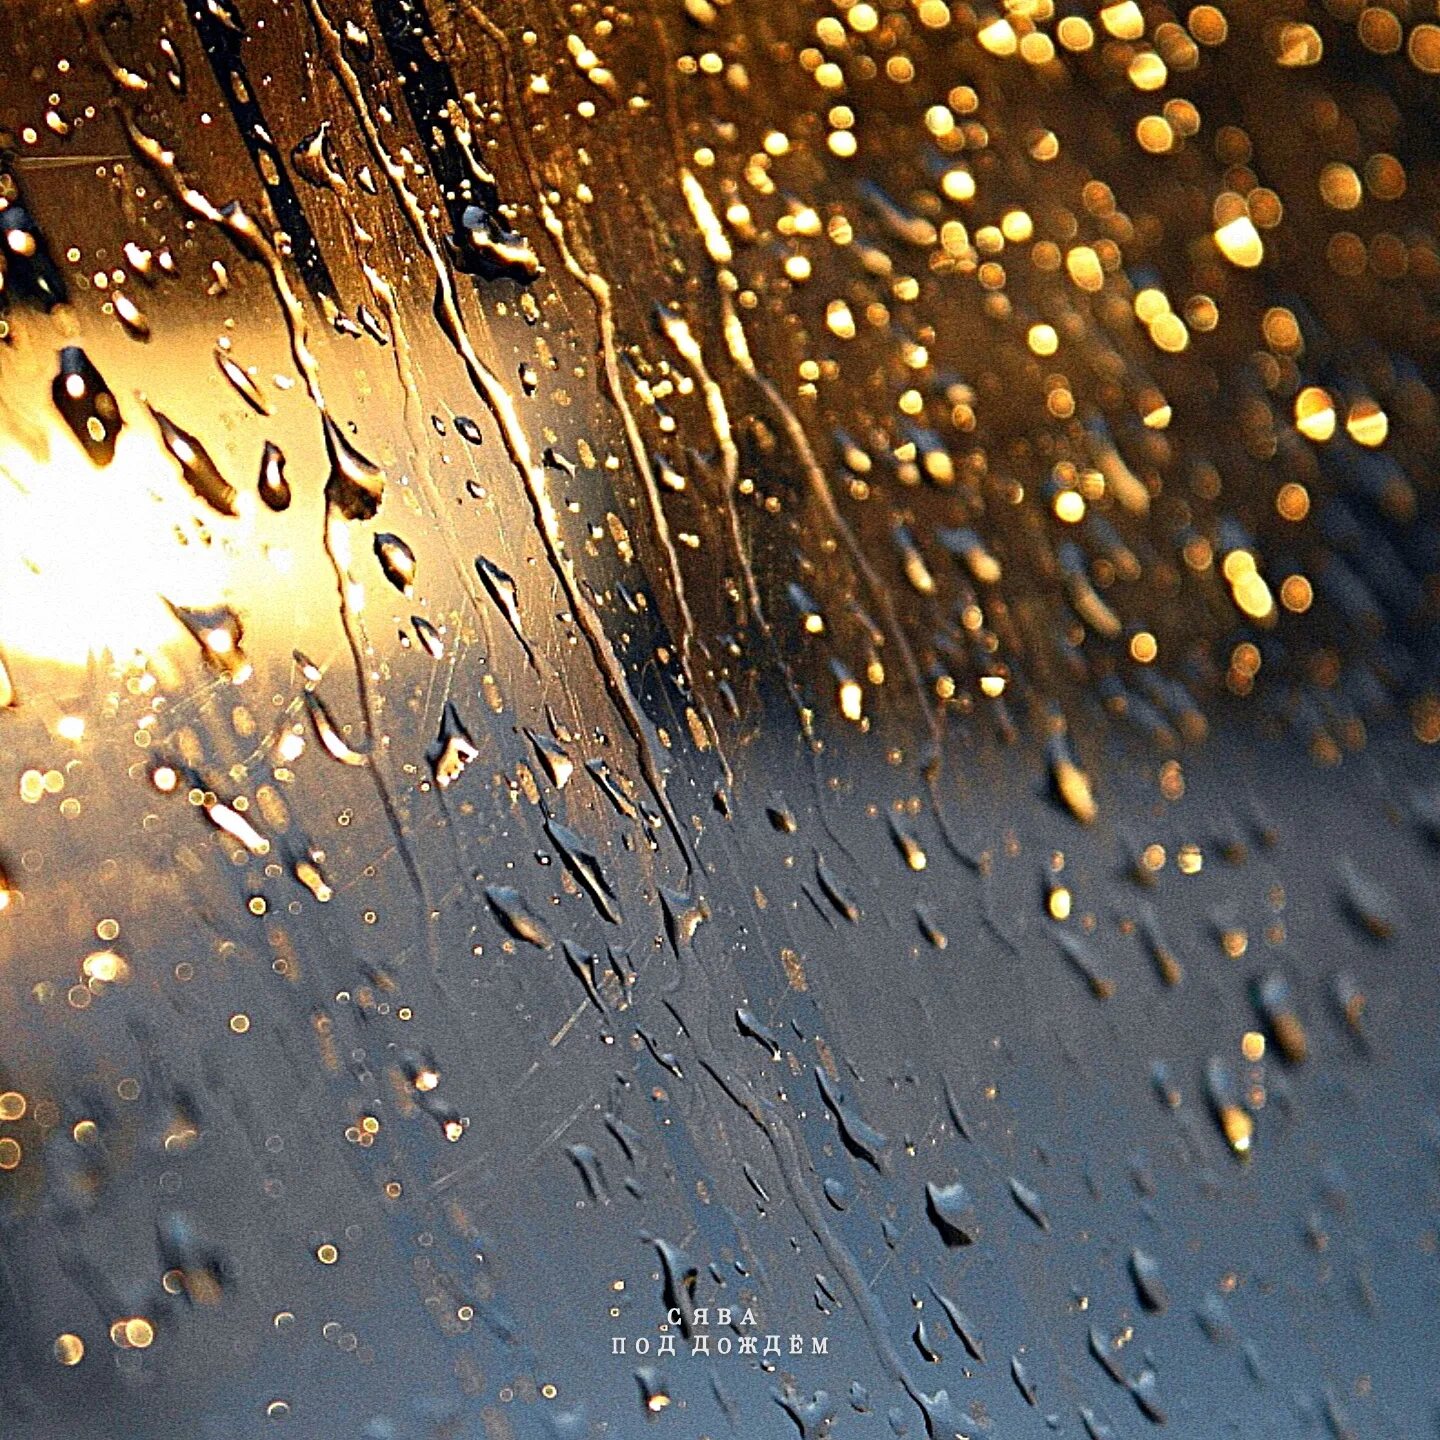 10 00 00 дождь. Под дождем. Дождь под дождем. Обложка дождь. Отвесный дождь.